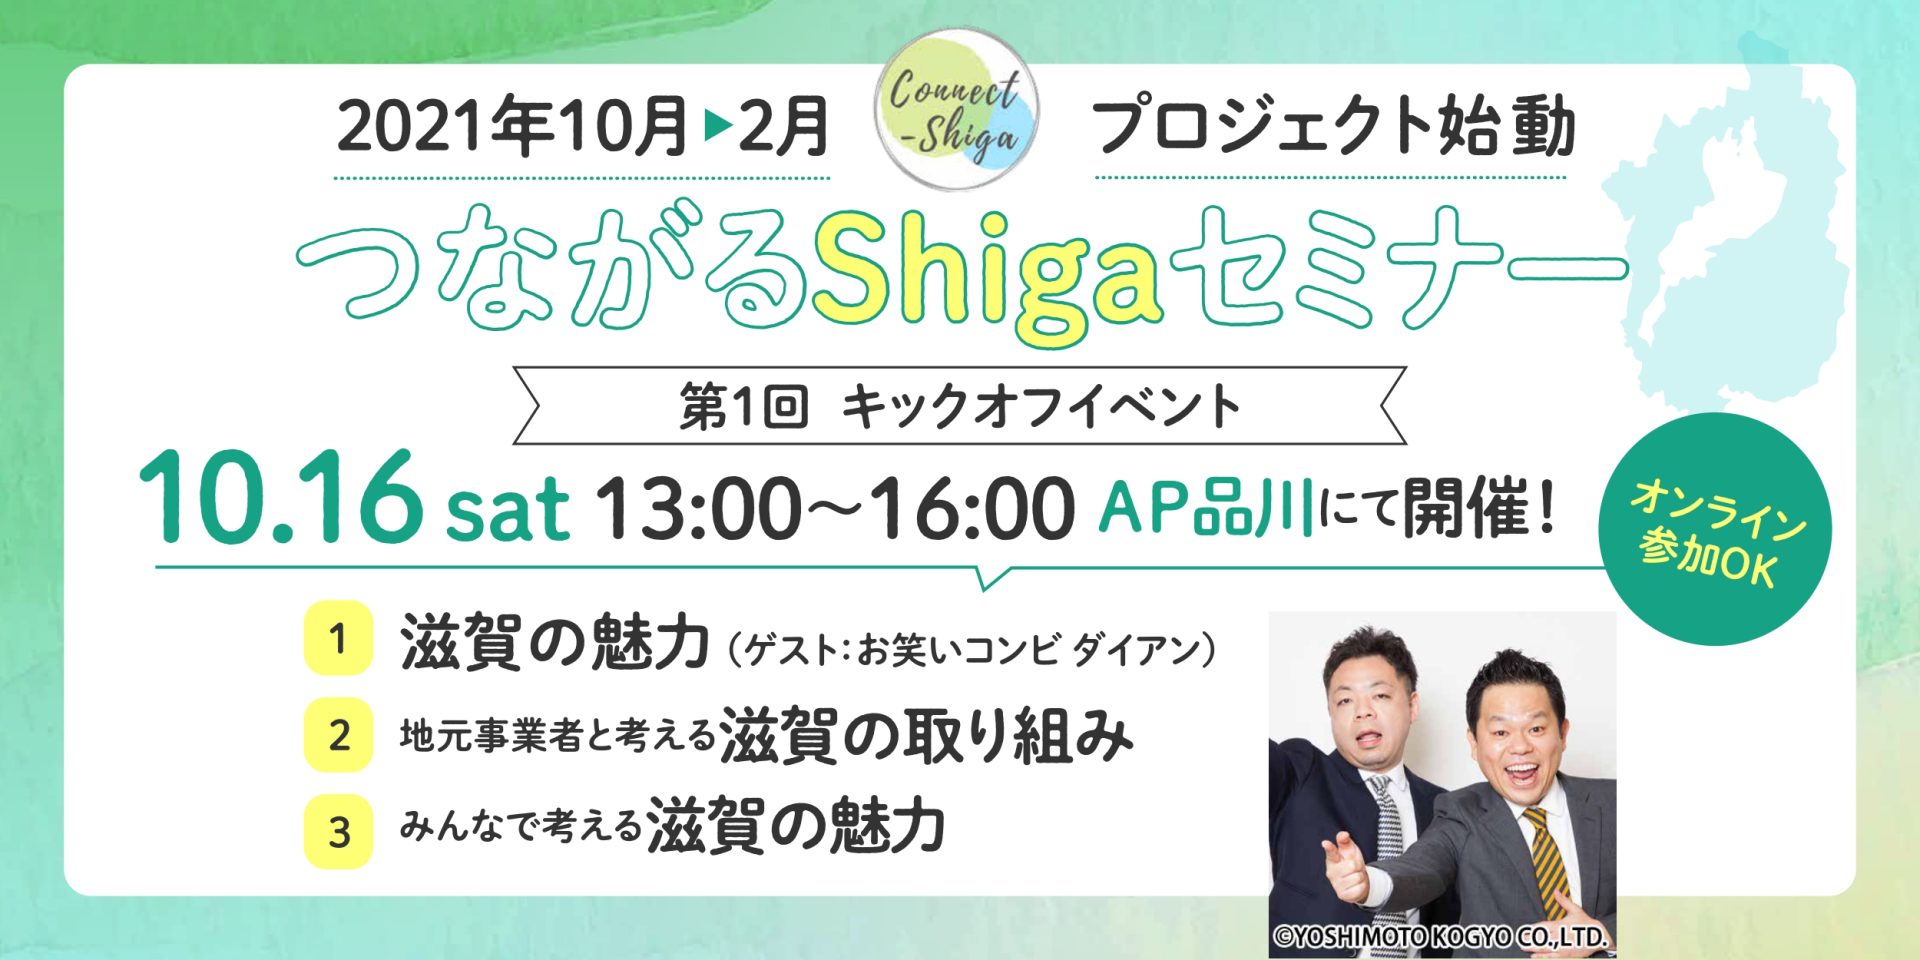 【～滋賀とつながる、滋賀でつながる～「Connect-Shiga2021-2022」キックオフイベントを開催します！】 | 地域のトピックス